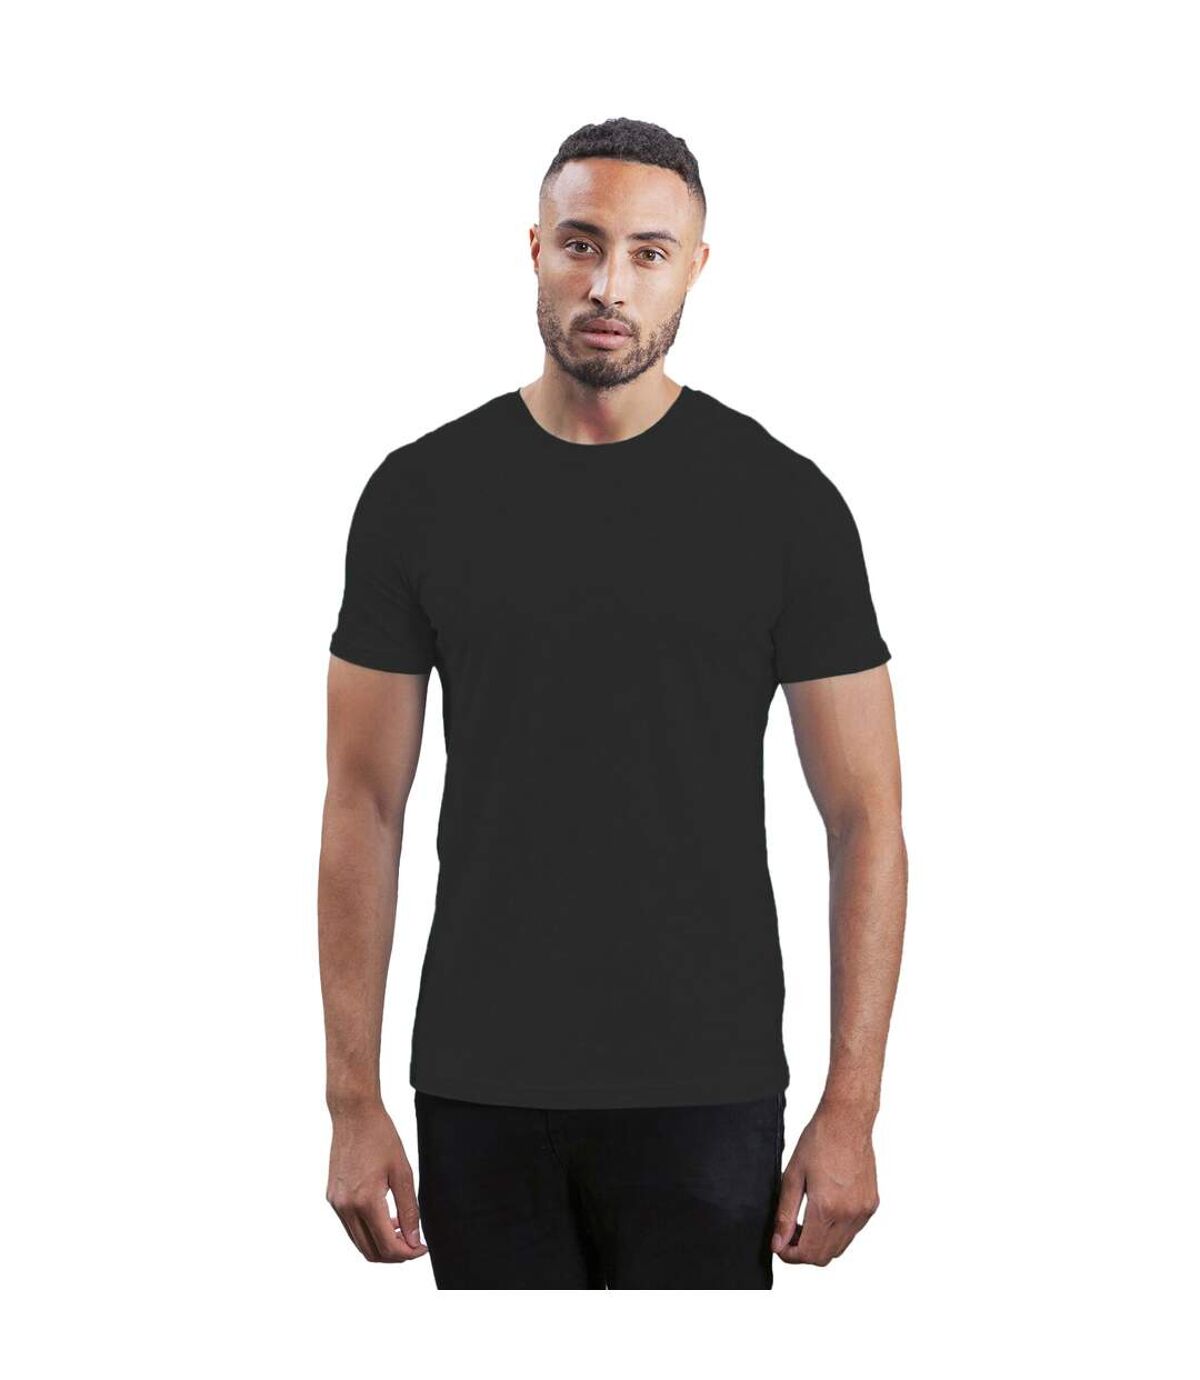 Mantis - T-shirt - Homme (Gris foncé) - UTBC4764